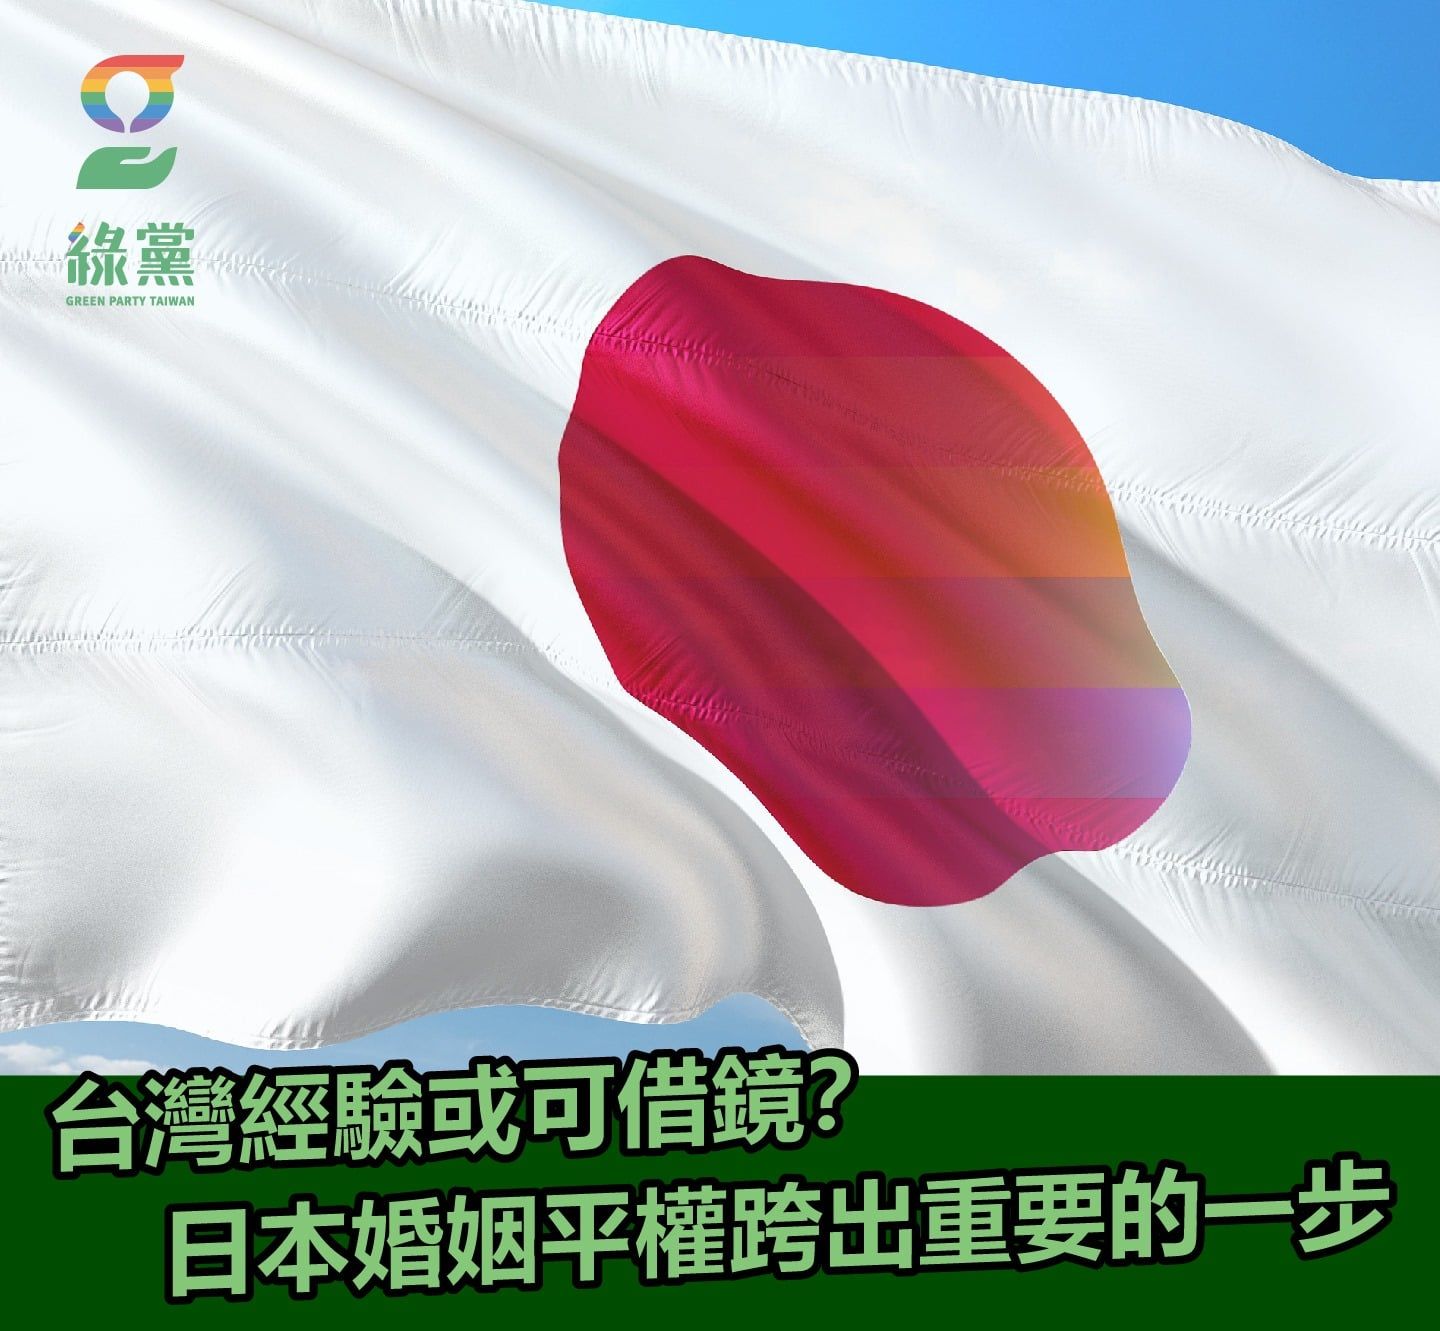 【台灣經驗或可借鏡？日本婚姻平權跨出重要的一步】